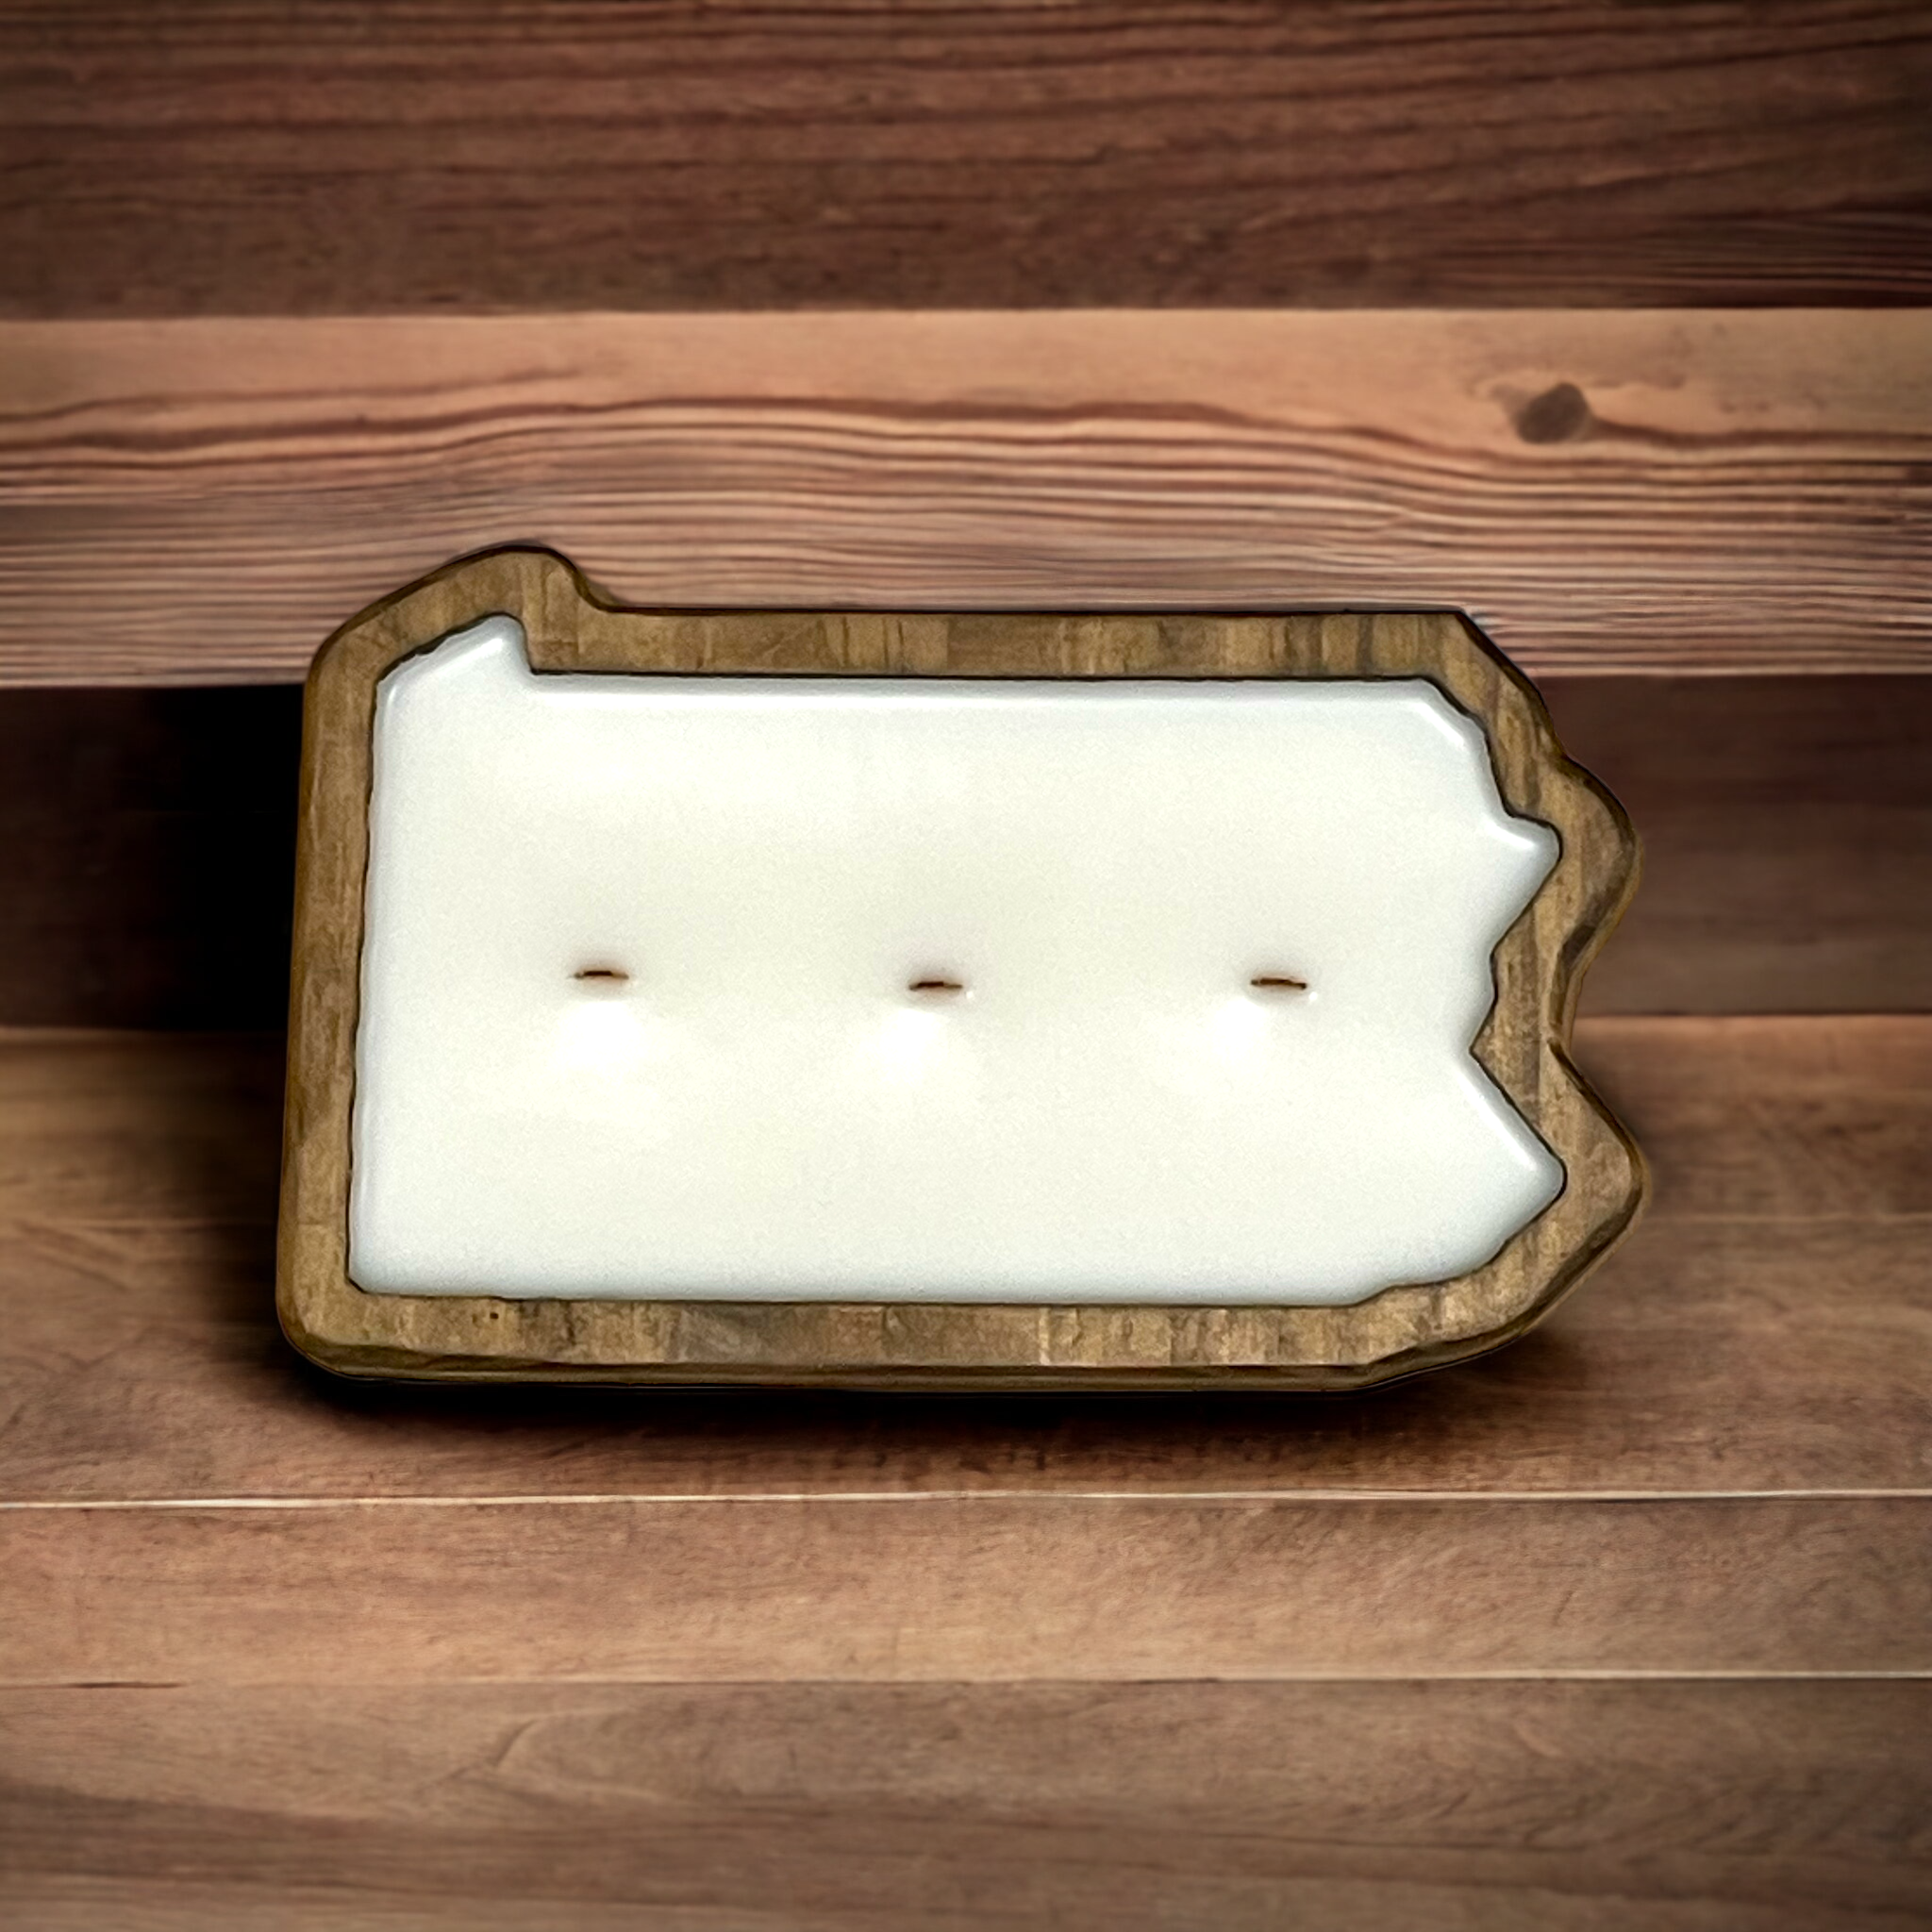 The Original U.S. State Dough Bowl Candles - A Joy Forever Bath + Body